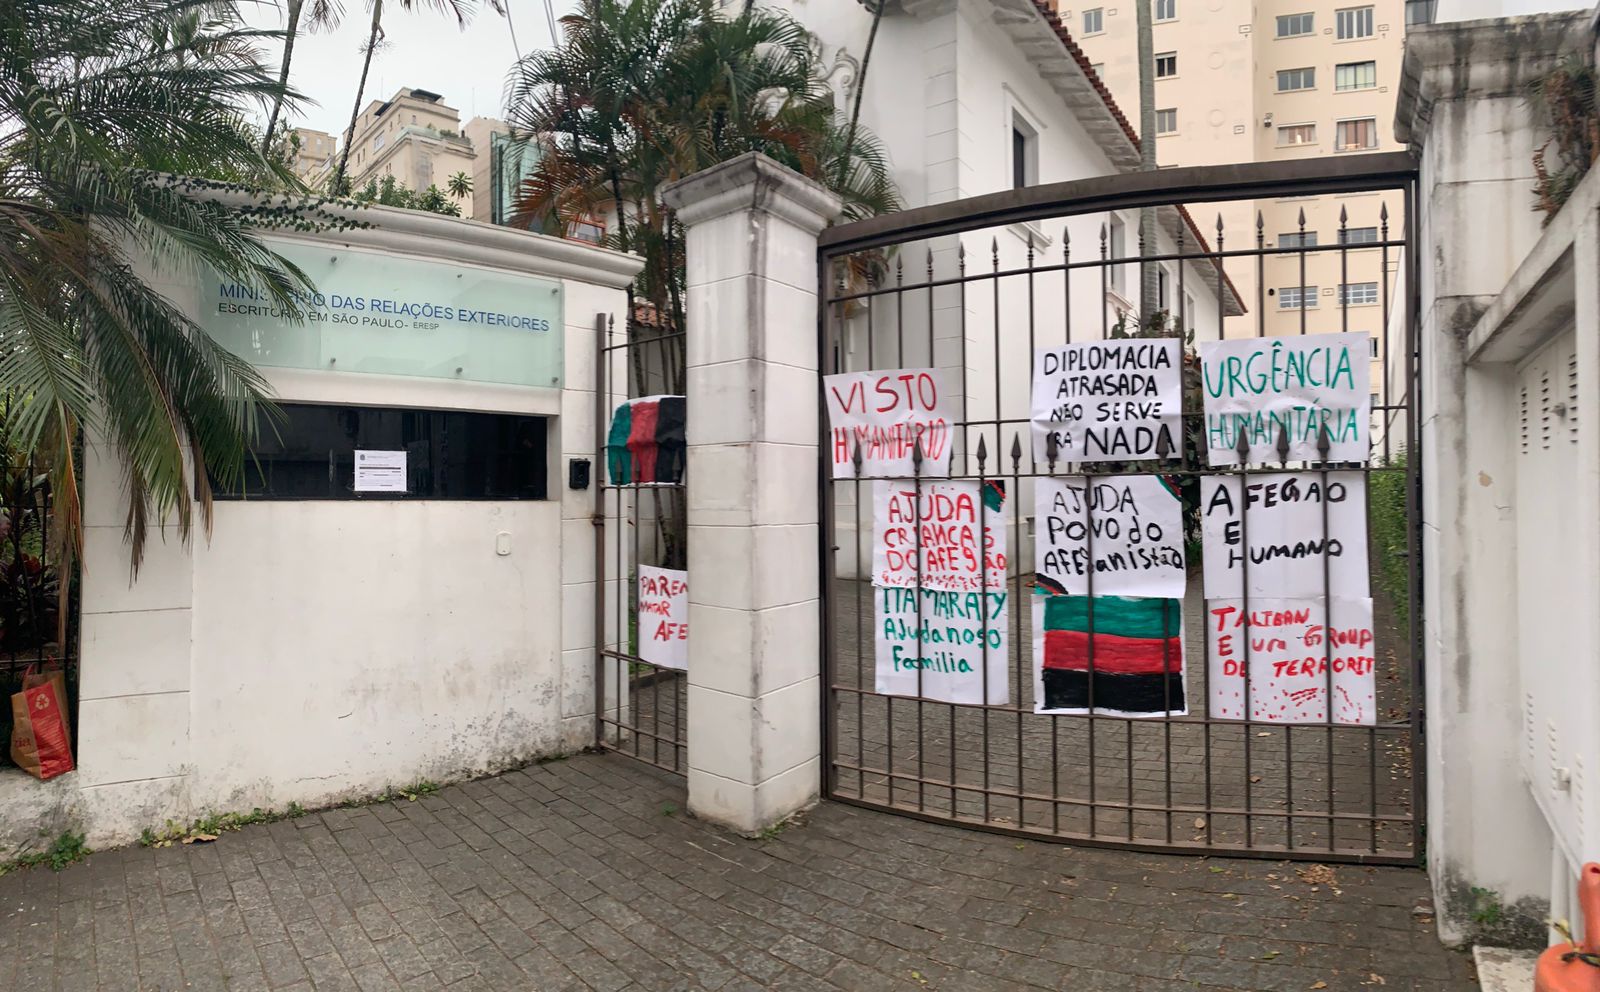 Escritório do Itamaraty em São Paulo, após protesto de afegãos no Brasil pedindo visto humanitário.